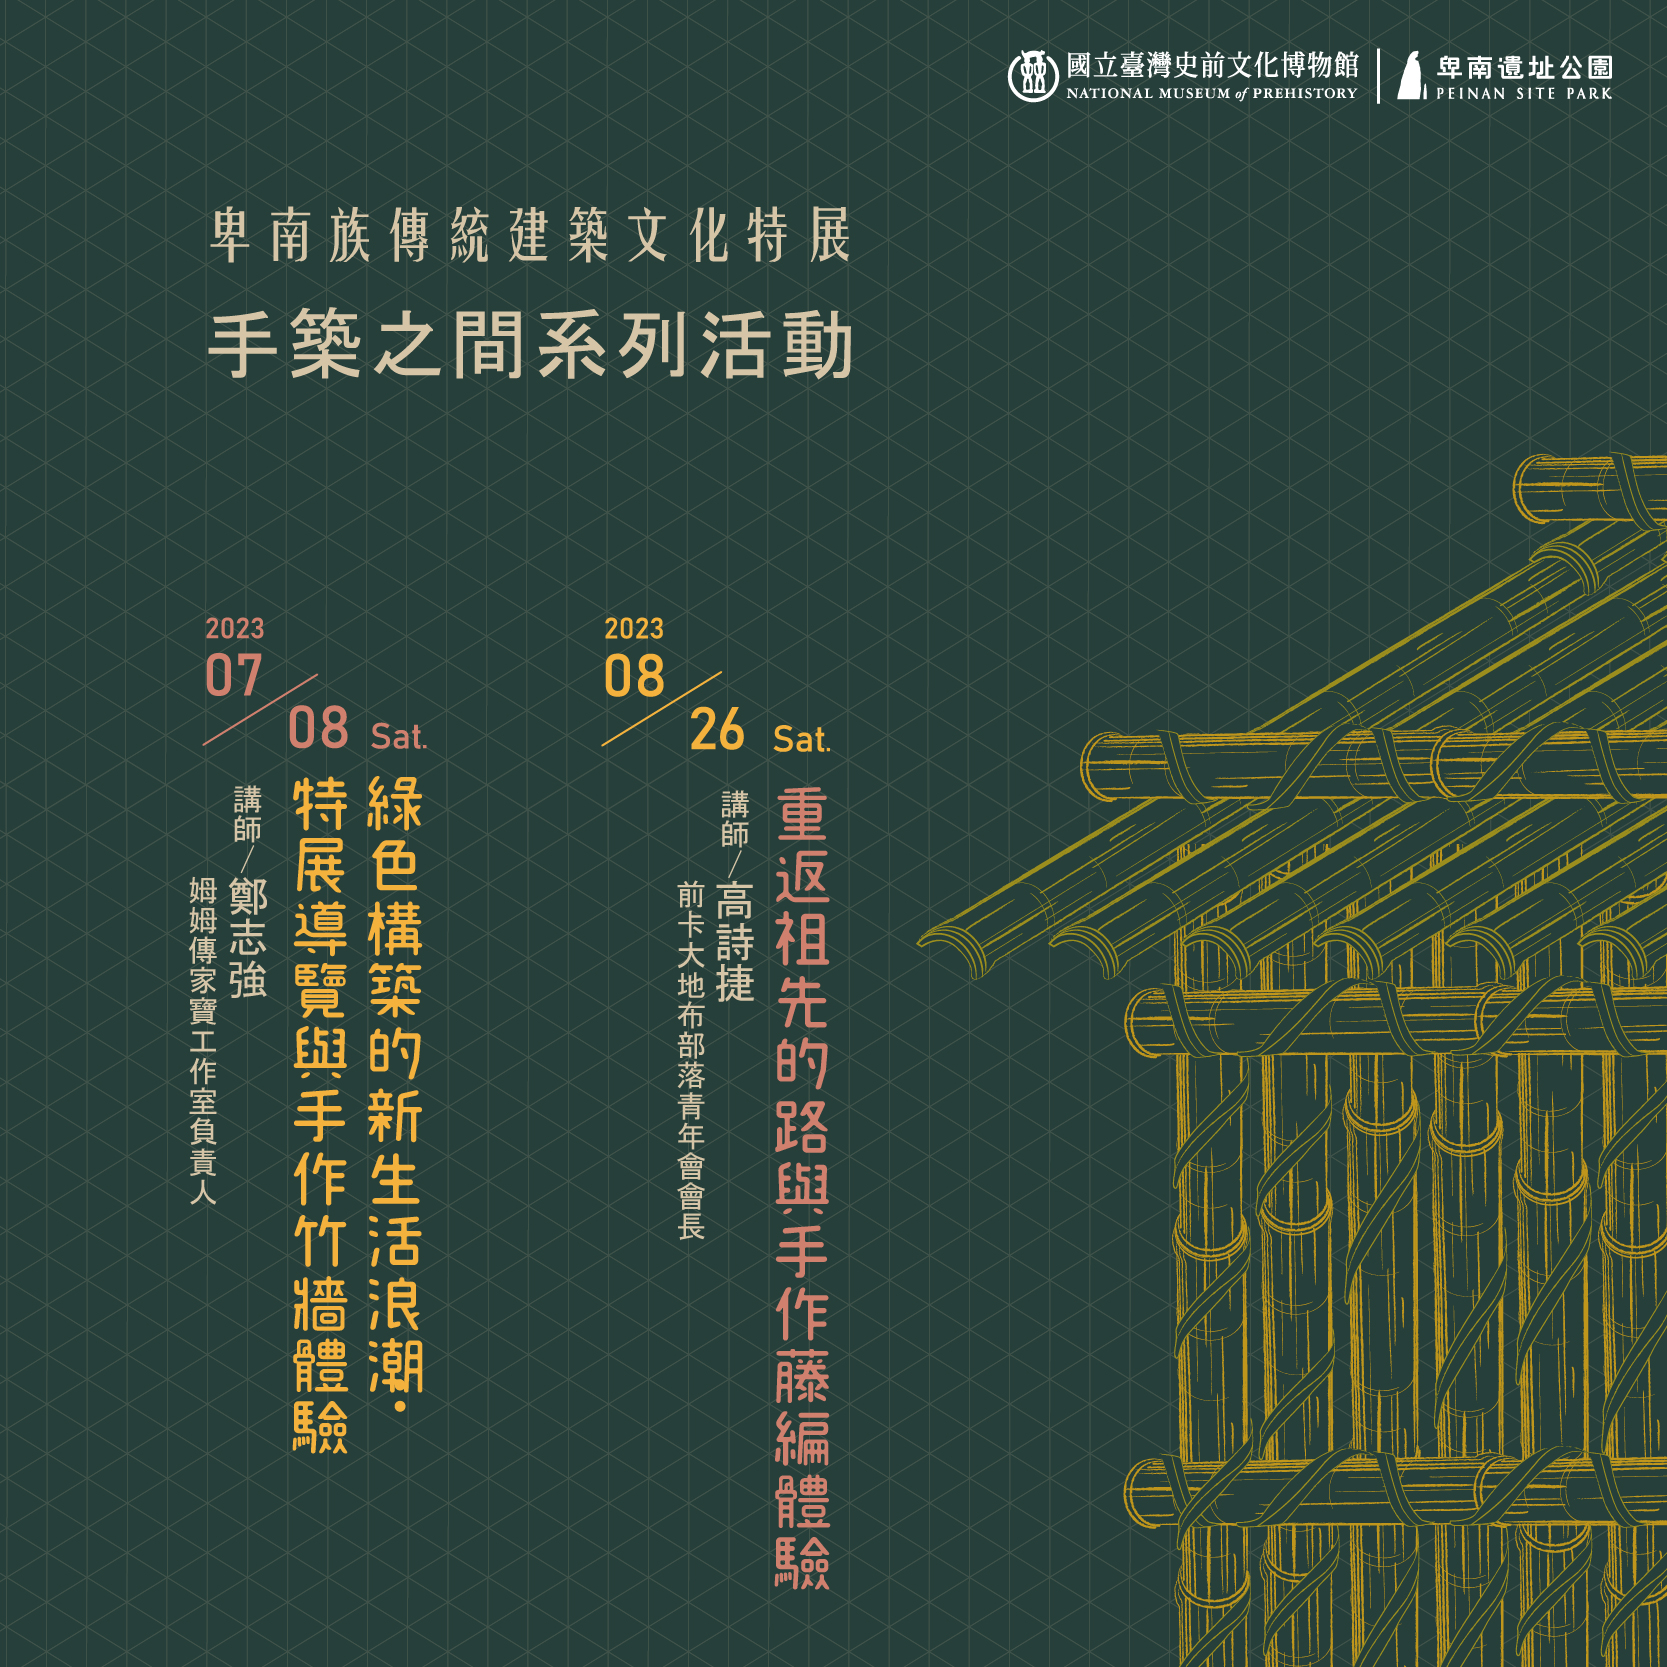 卑南族傳統建築文化特展『手築之間系列活動』